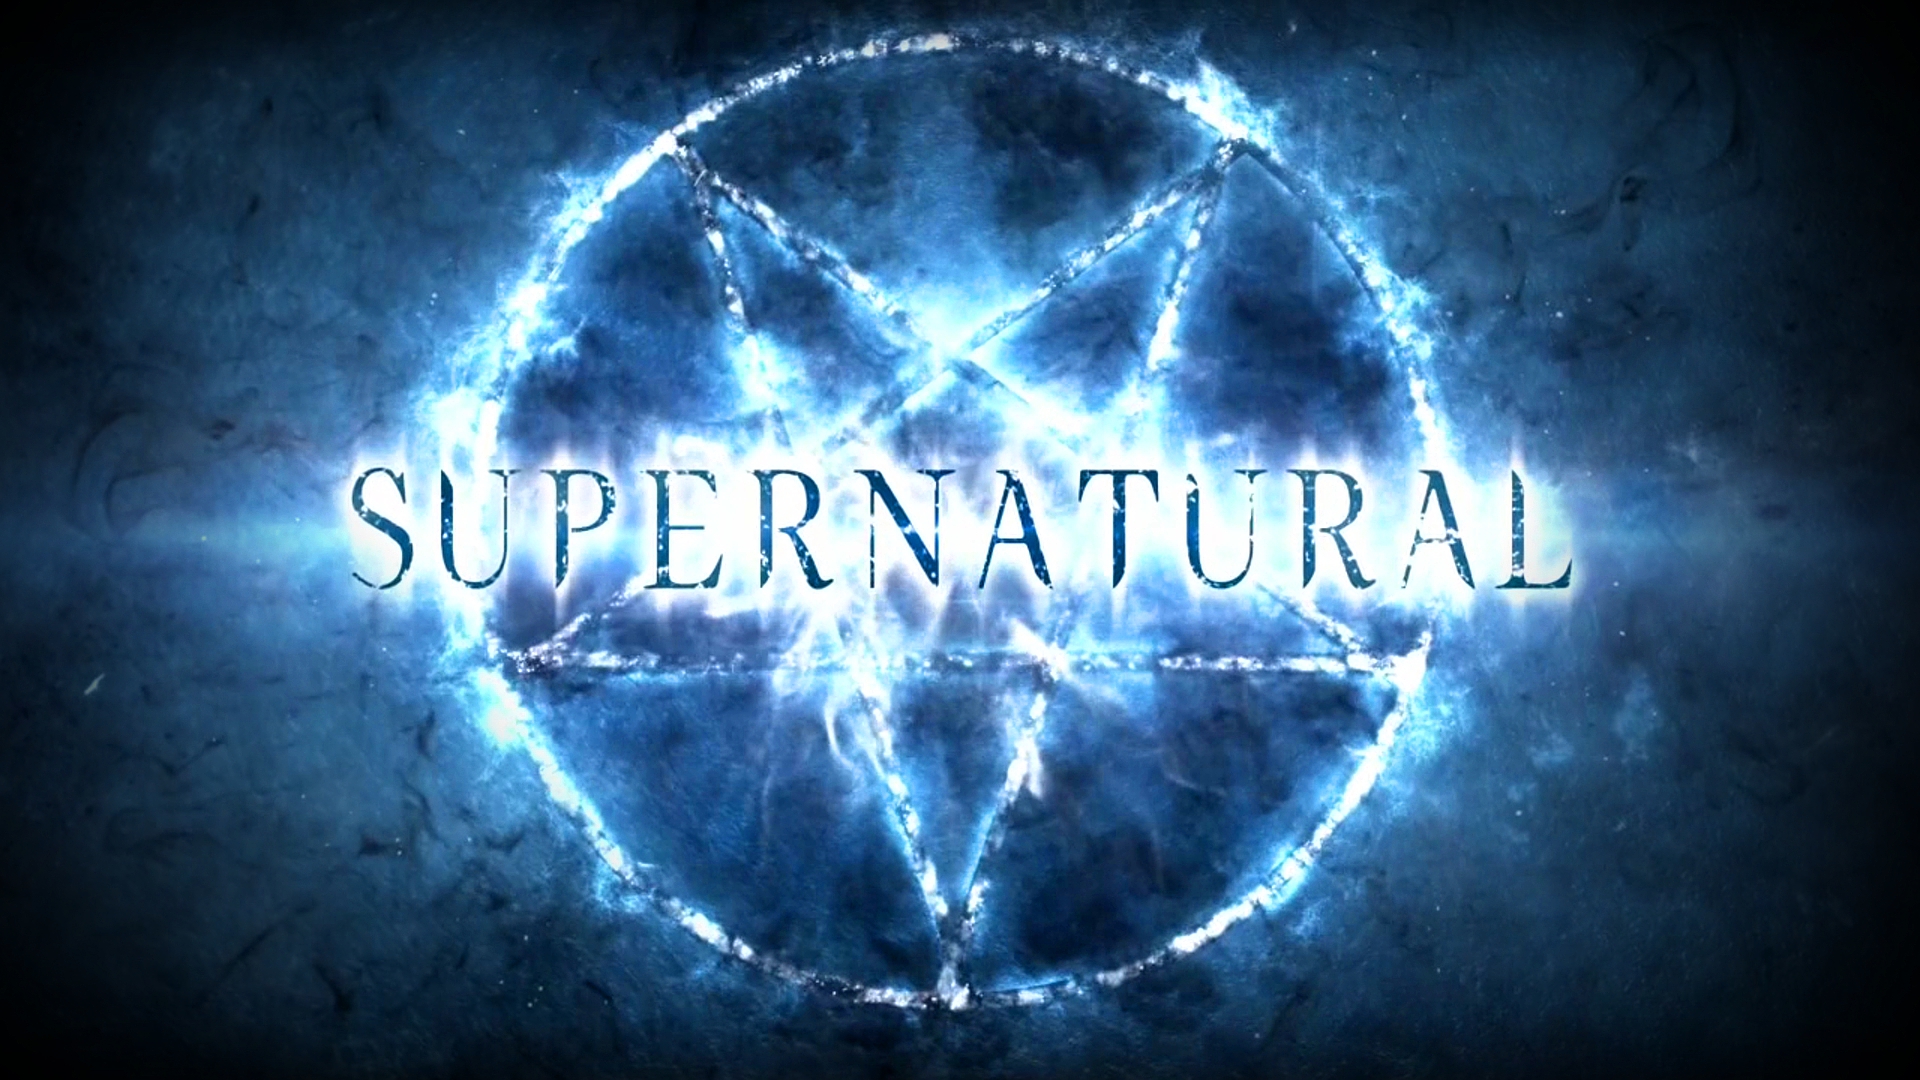 Supernatural background